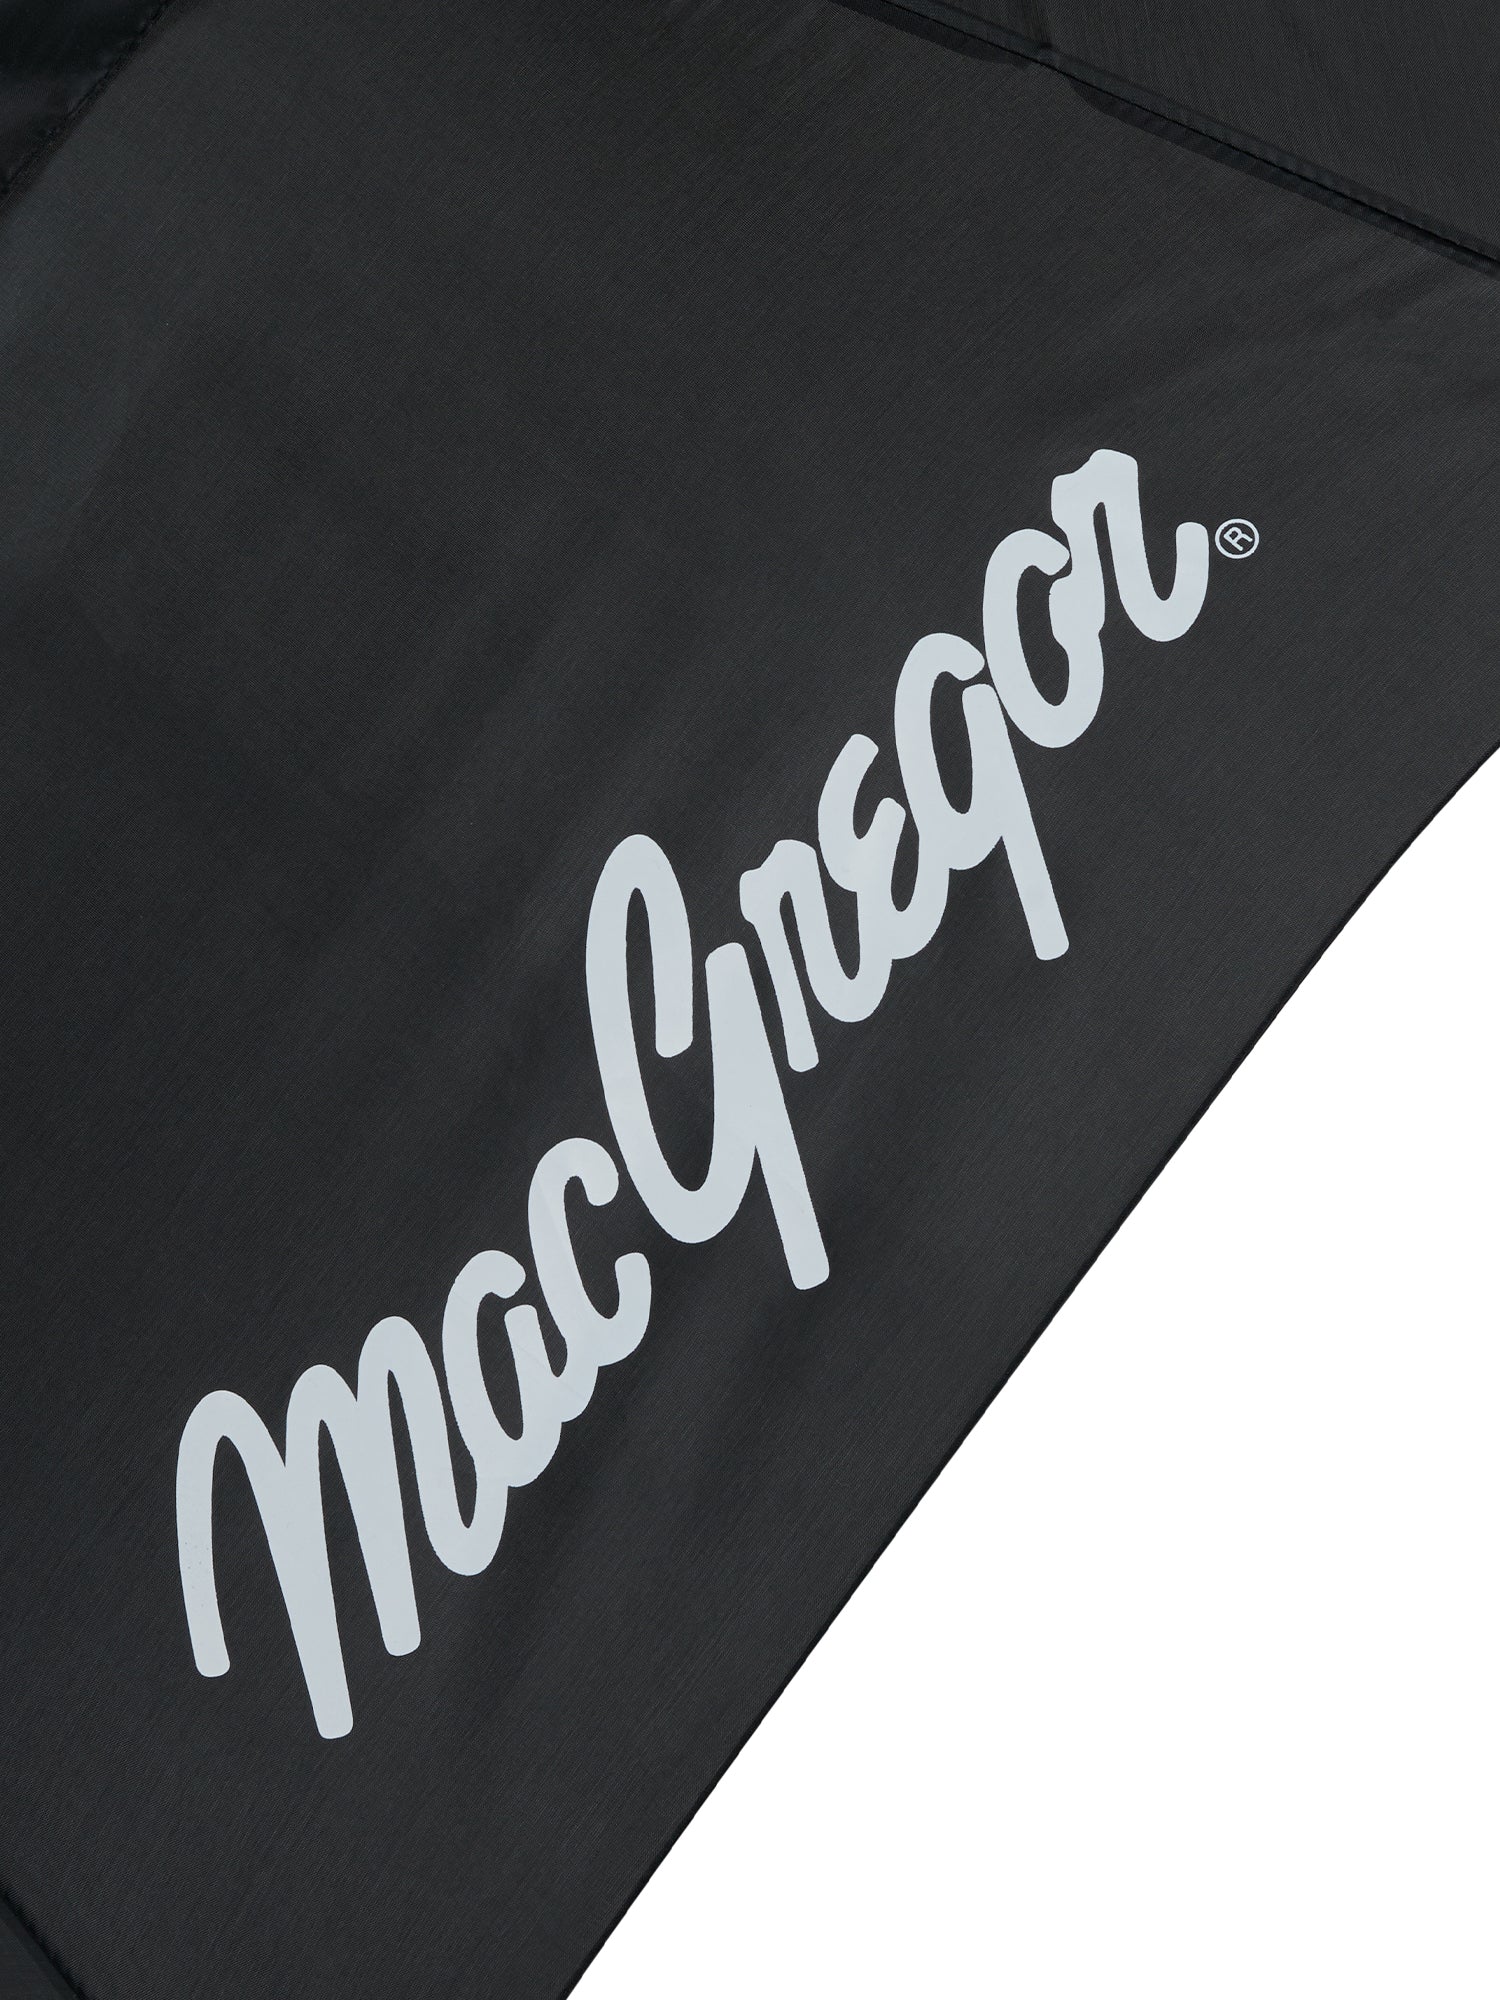 Dual Canopy Umbrella - MacGregor Golf